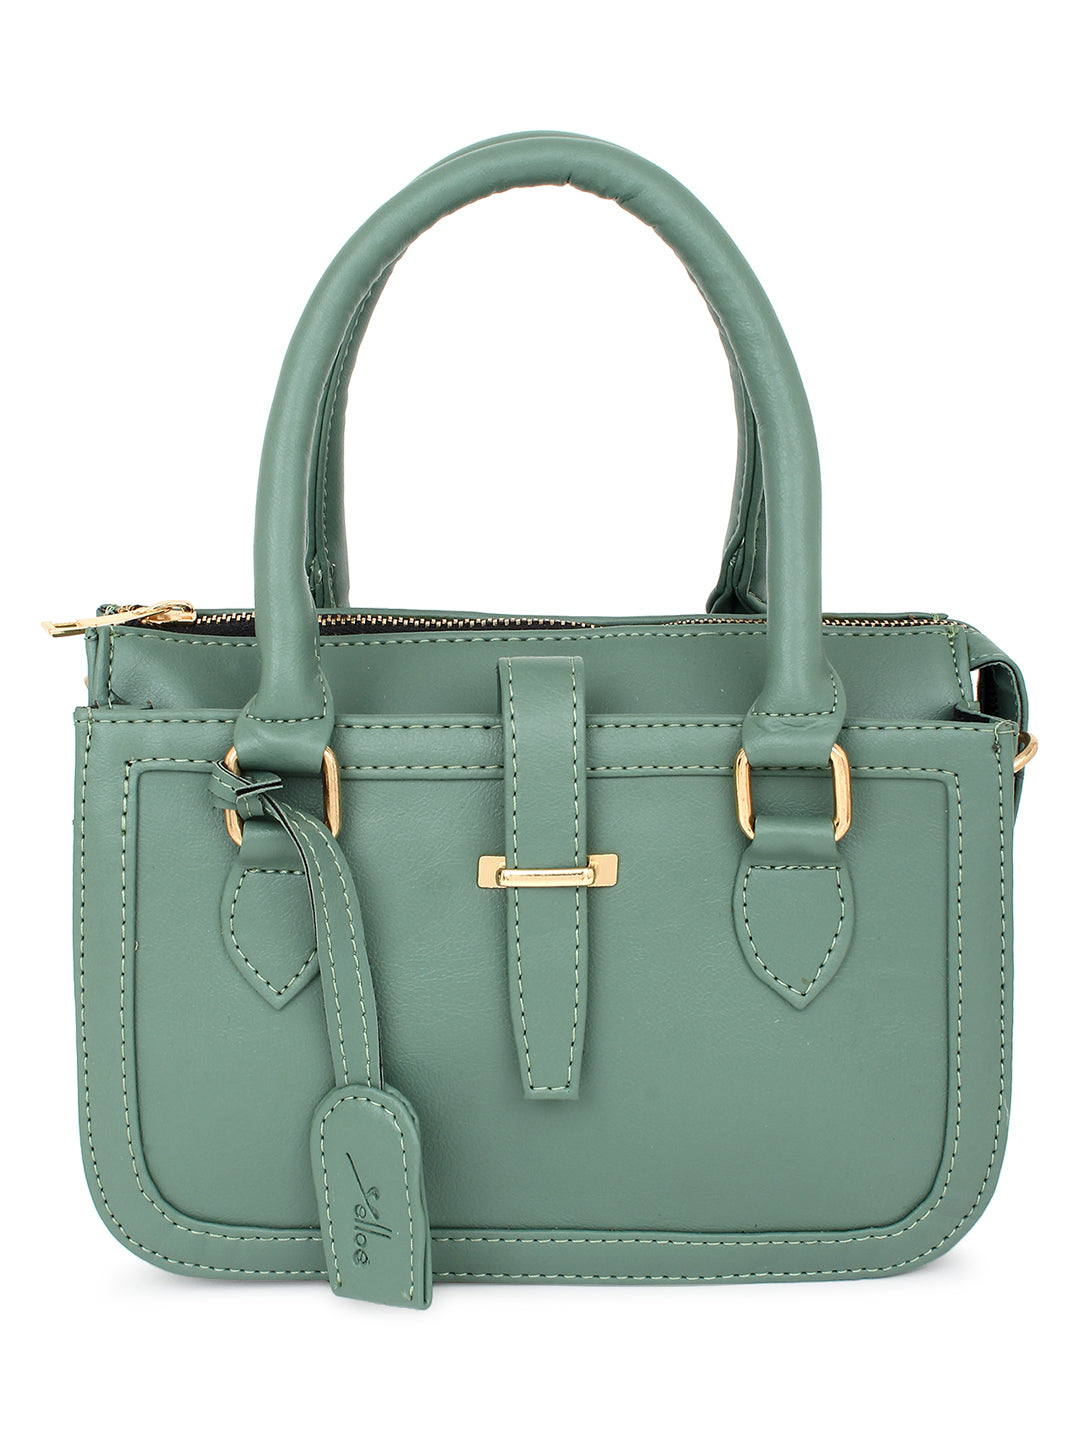 Green satchel Handbag